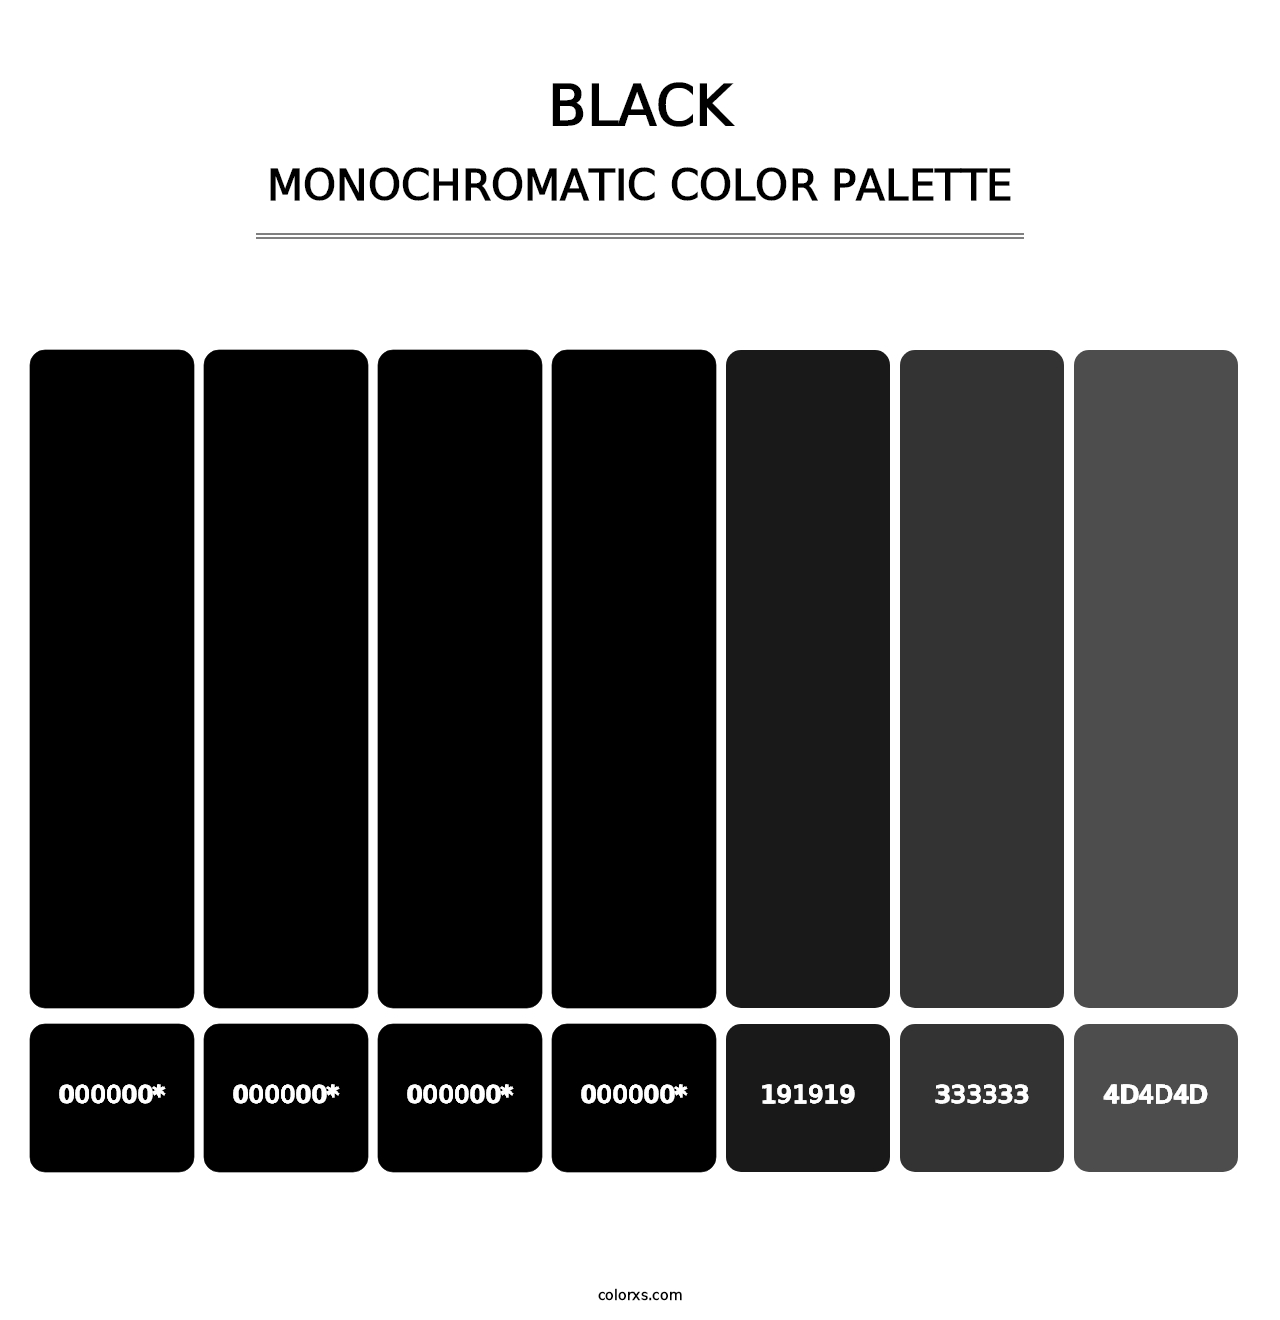 Black - Monochromatic Color Palette